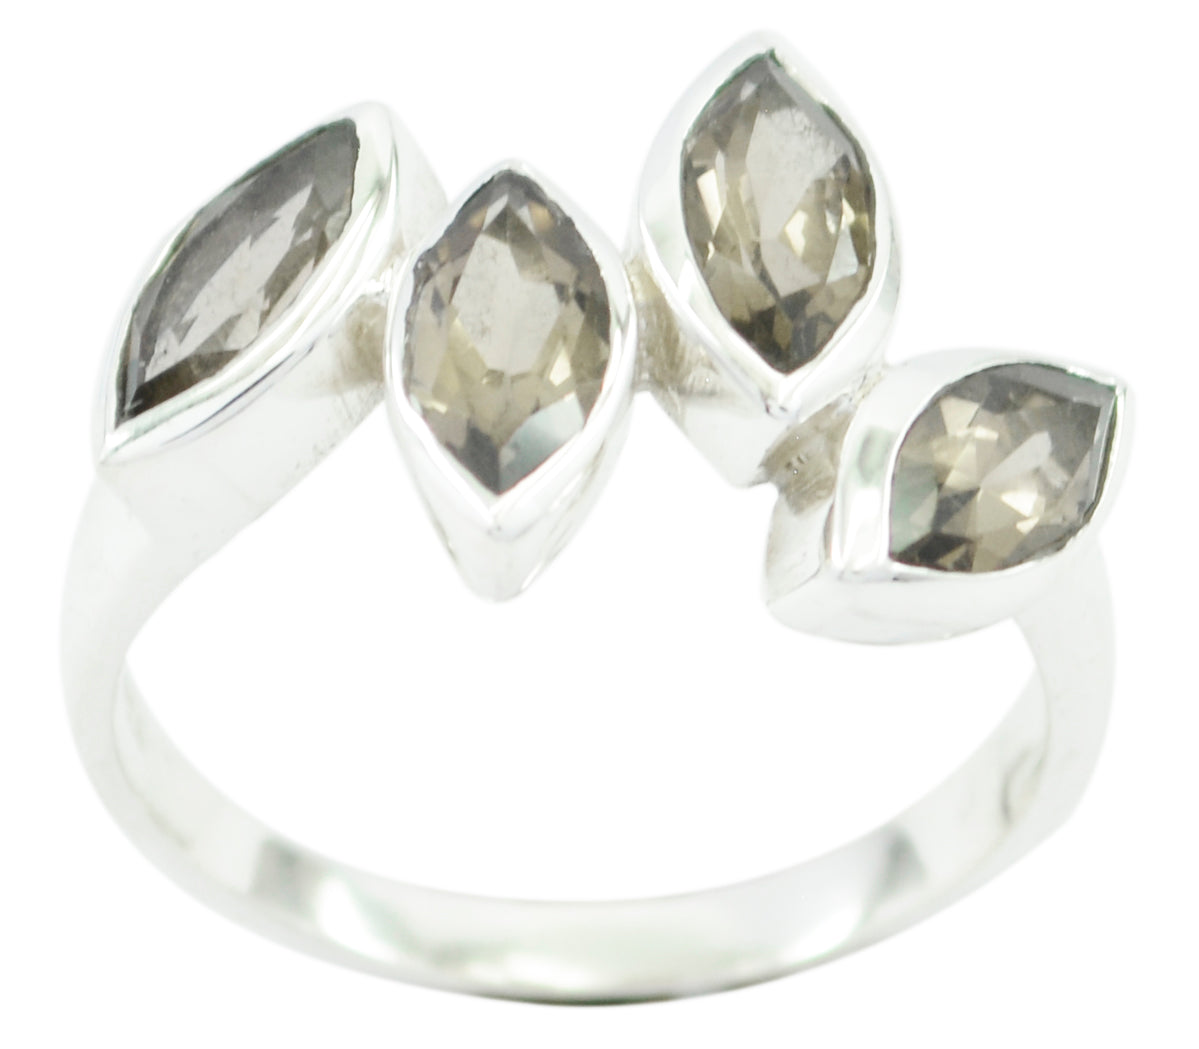 Riyo glamoureuze edelsteen rookkwarts zilveren ringen sieradenmagazijn